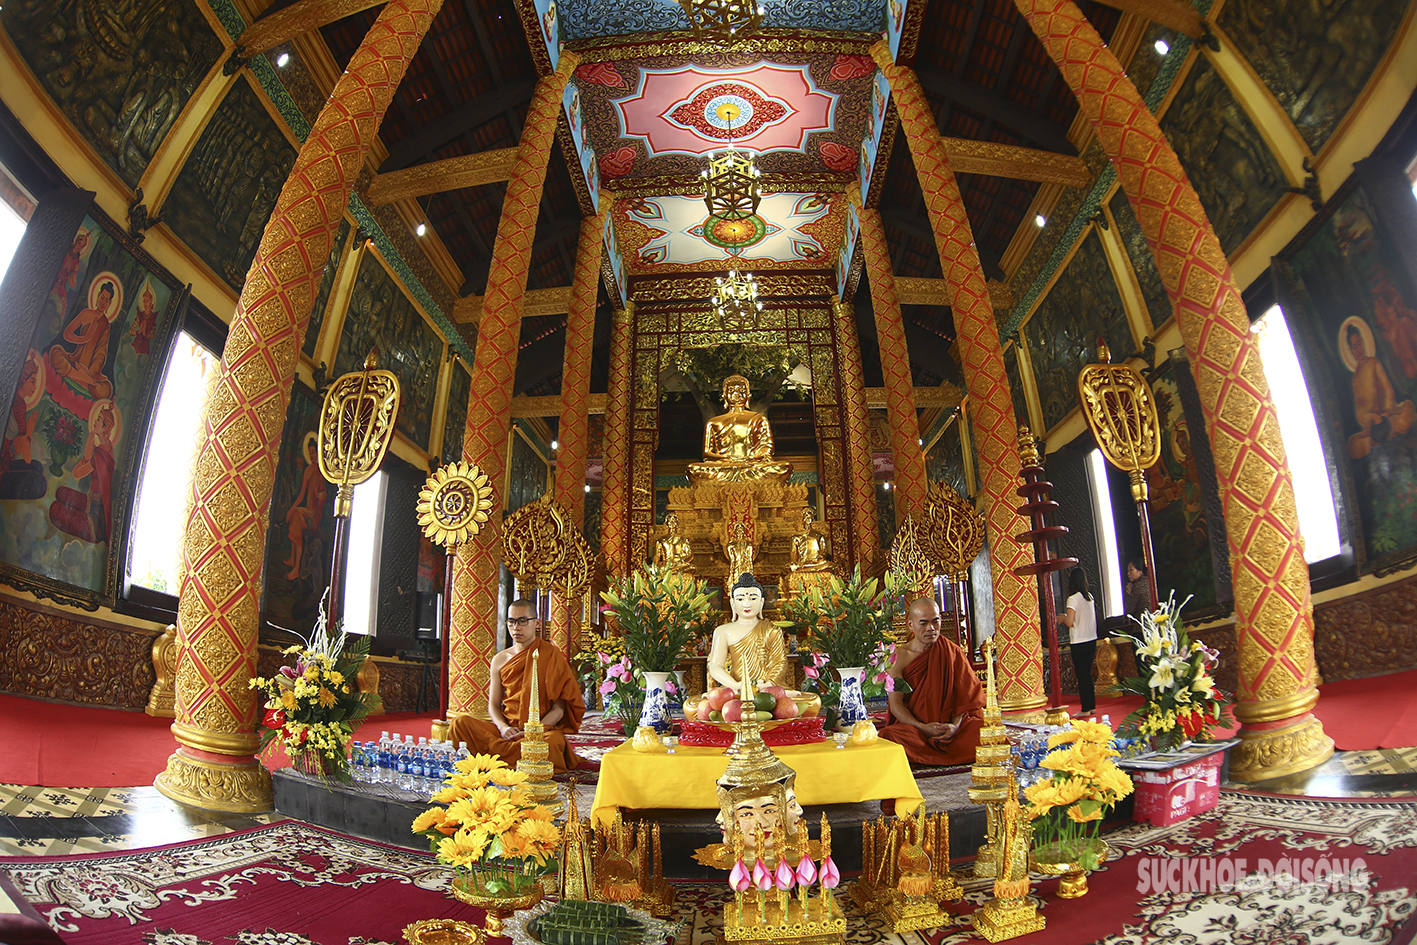 Ấn tượng ngôi chùa Khmer giữa Thủ đô Hà Nội - Ảnh 2.